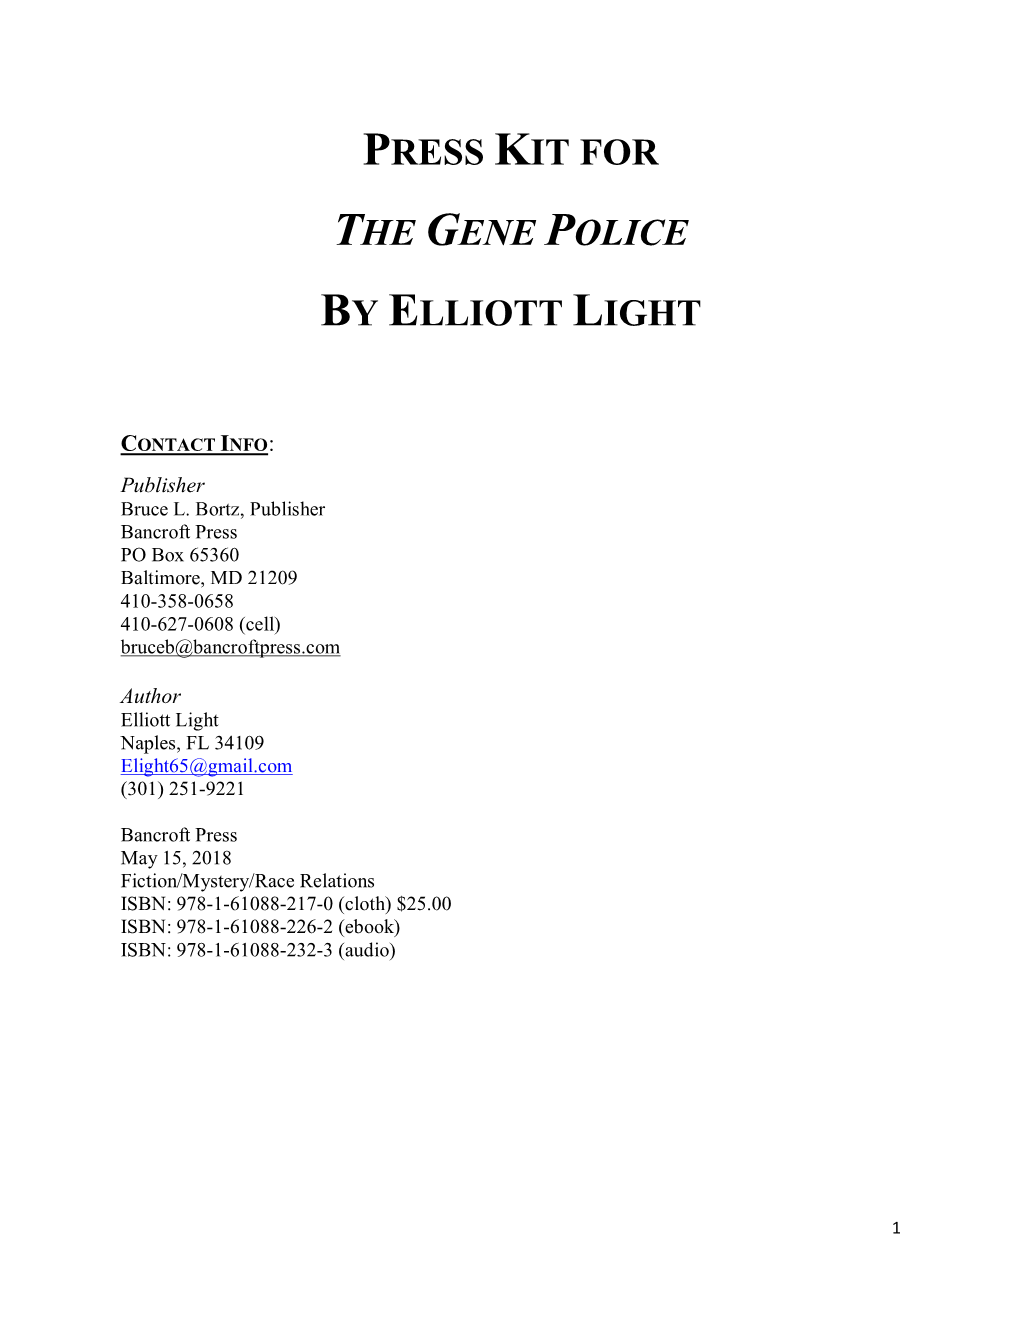 Press Kit for the Gene Police by Elliott Light